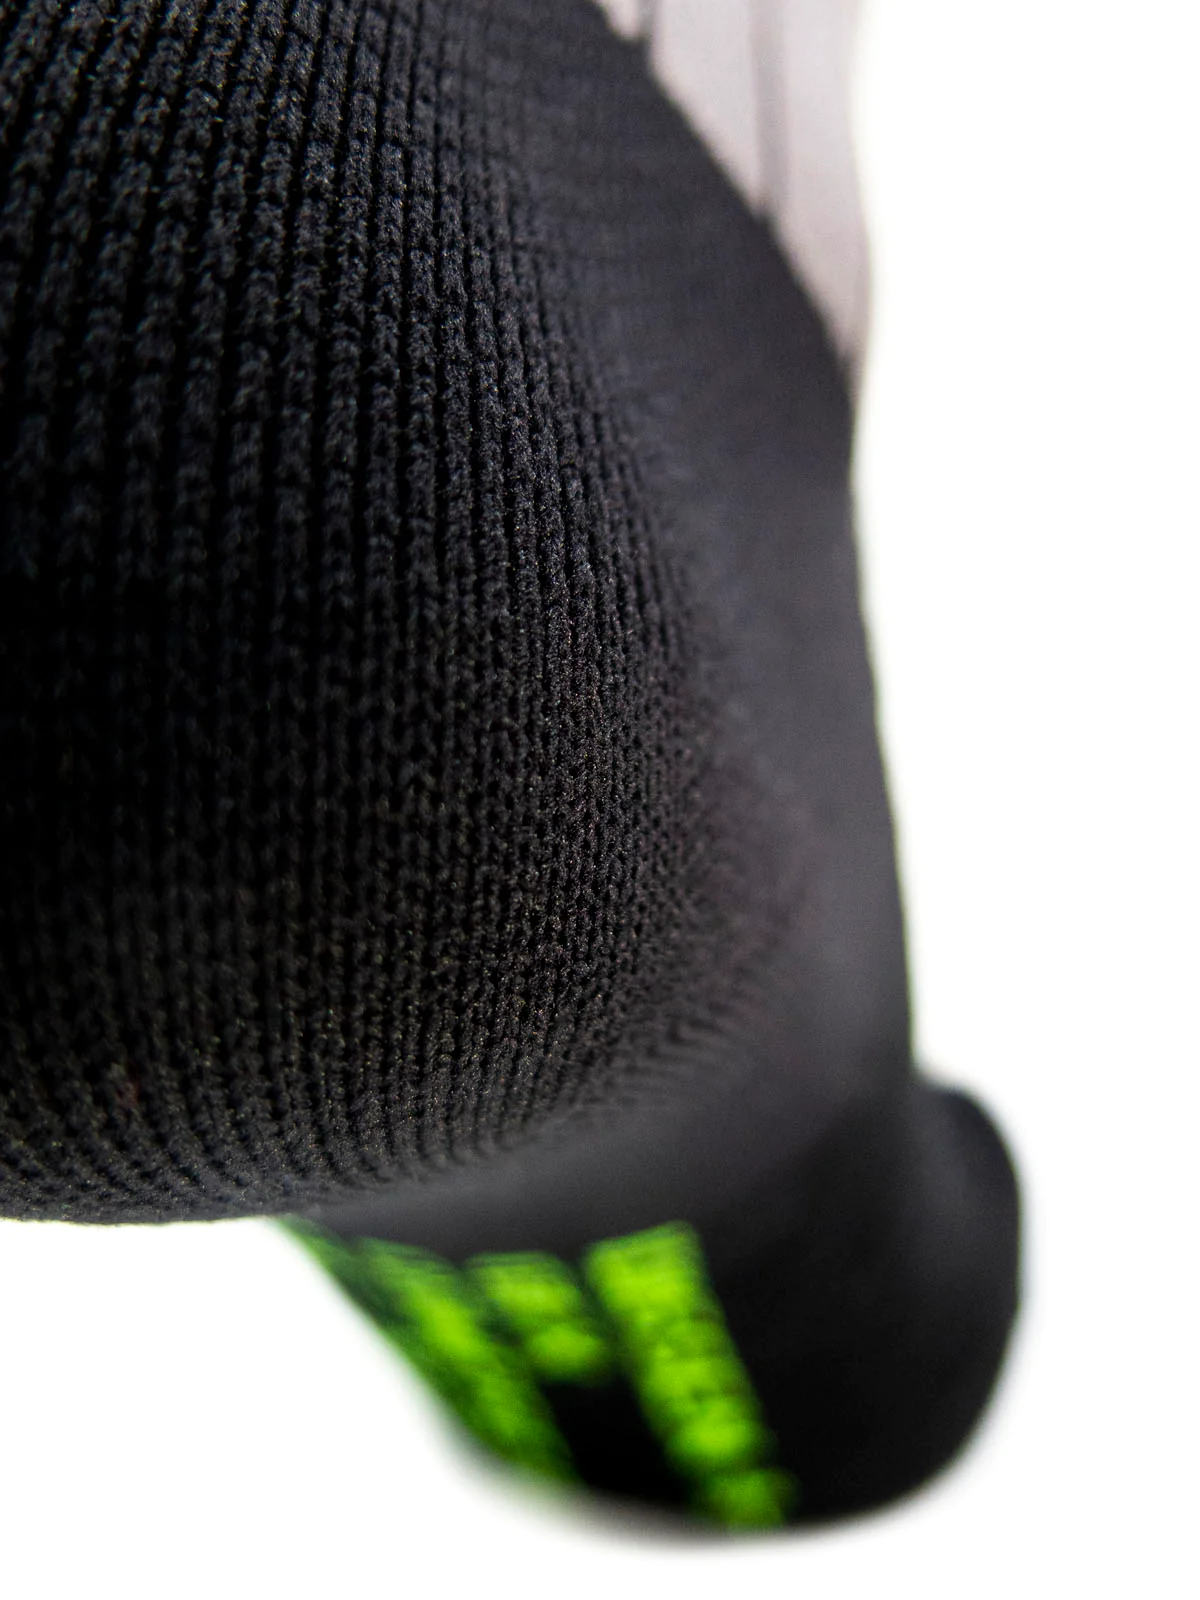 Dissent Ski GFX Compression DL Wool Socks